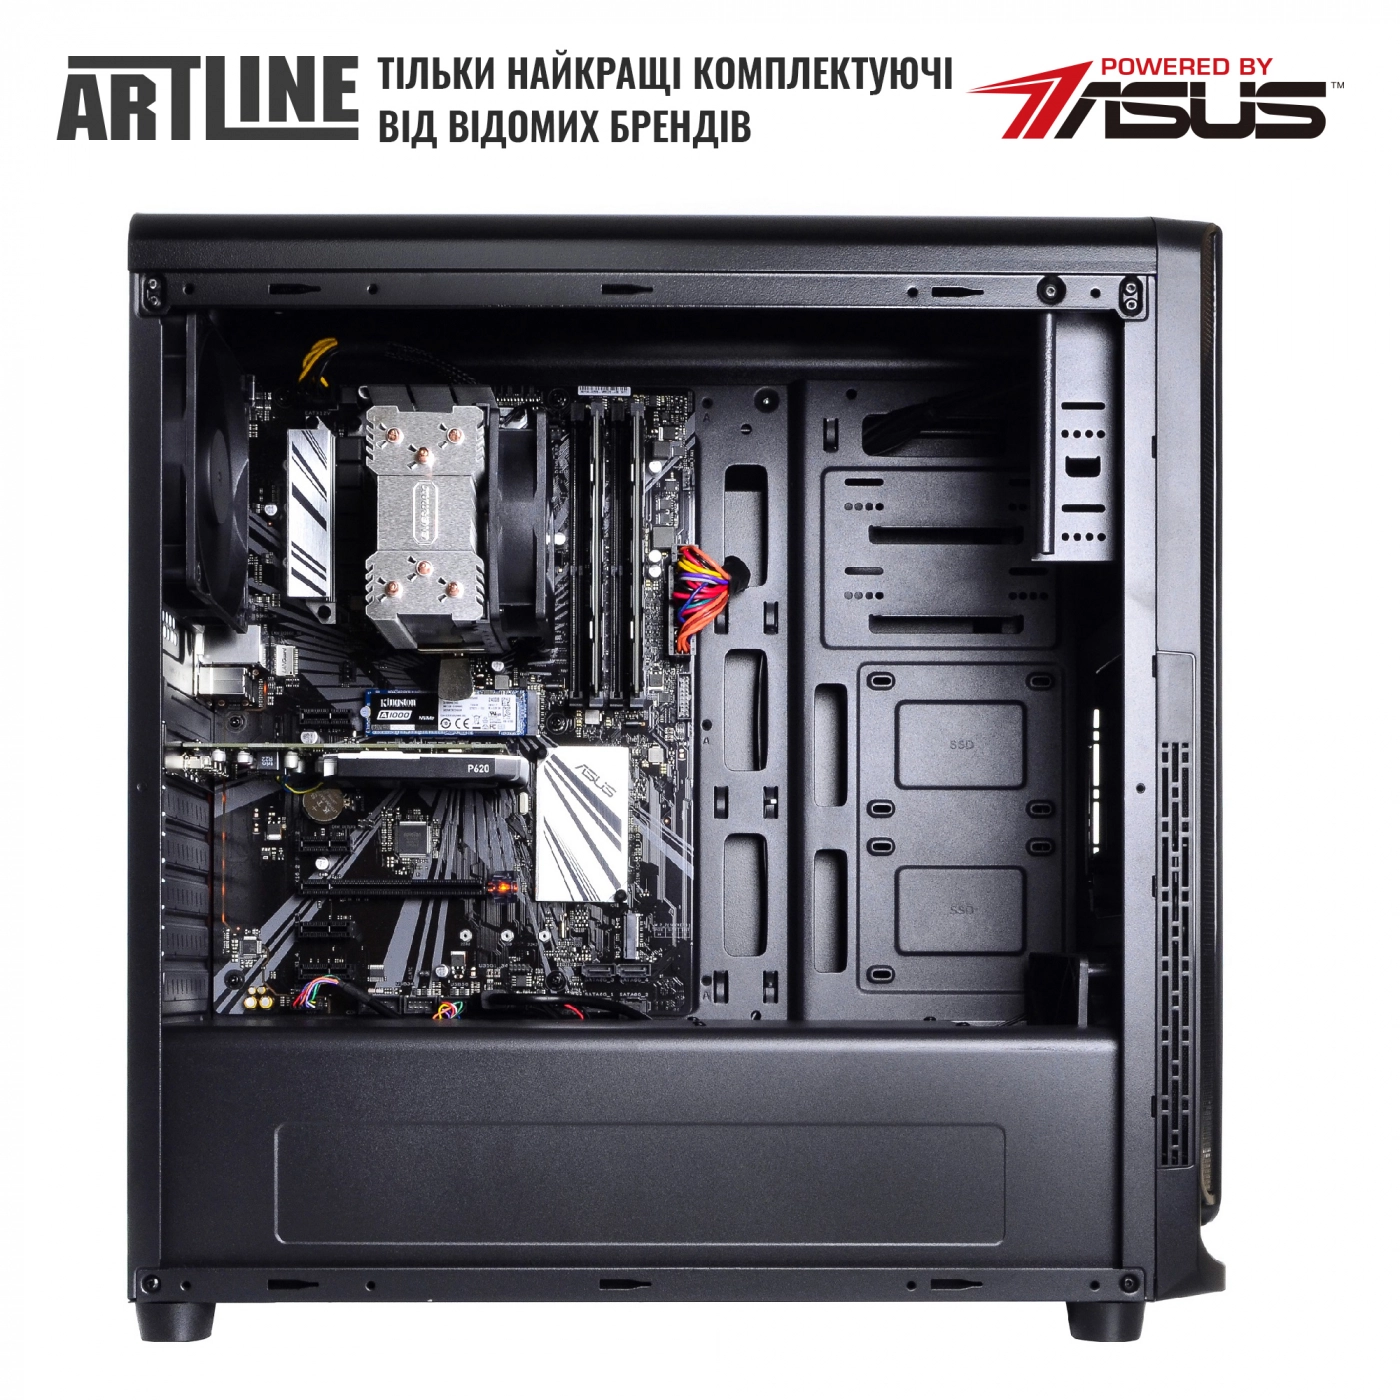 Купить Сервер ARTLINE Business T25v30 - фото 5